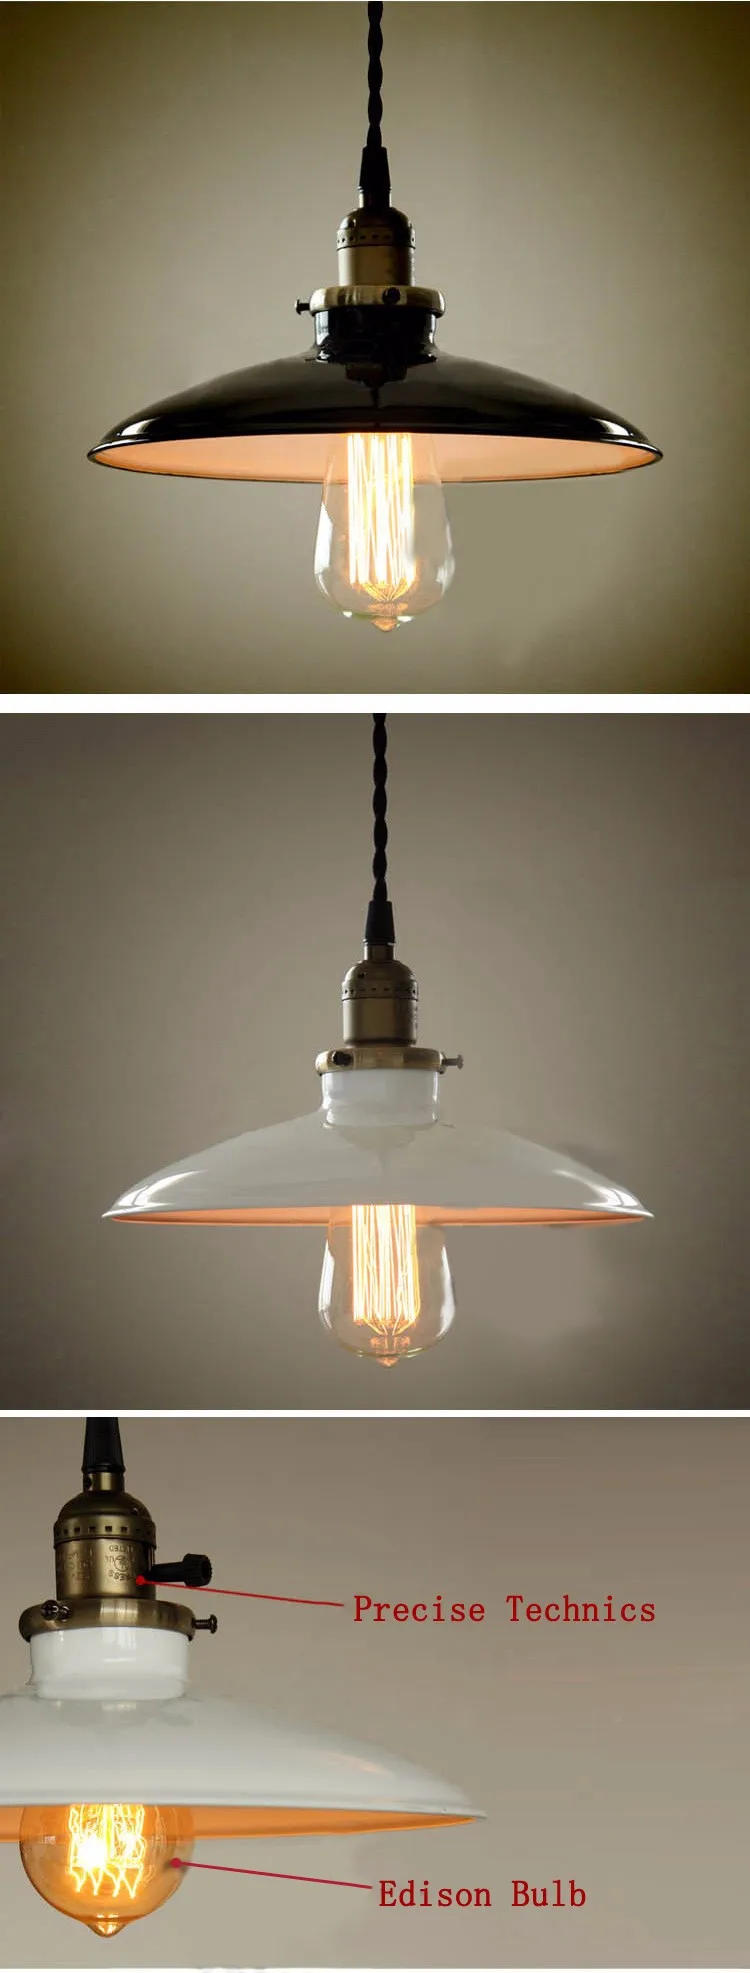 LuKLoy подвесные потолочные лампы потолочный светильник s светильники Светодиодный светильник для люстры прикроватный кухонный Лофт подвесной светильник светодиодный светильник для кухни